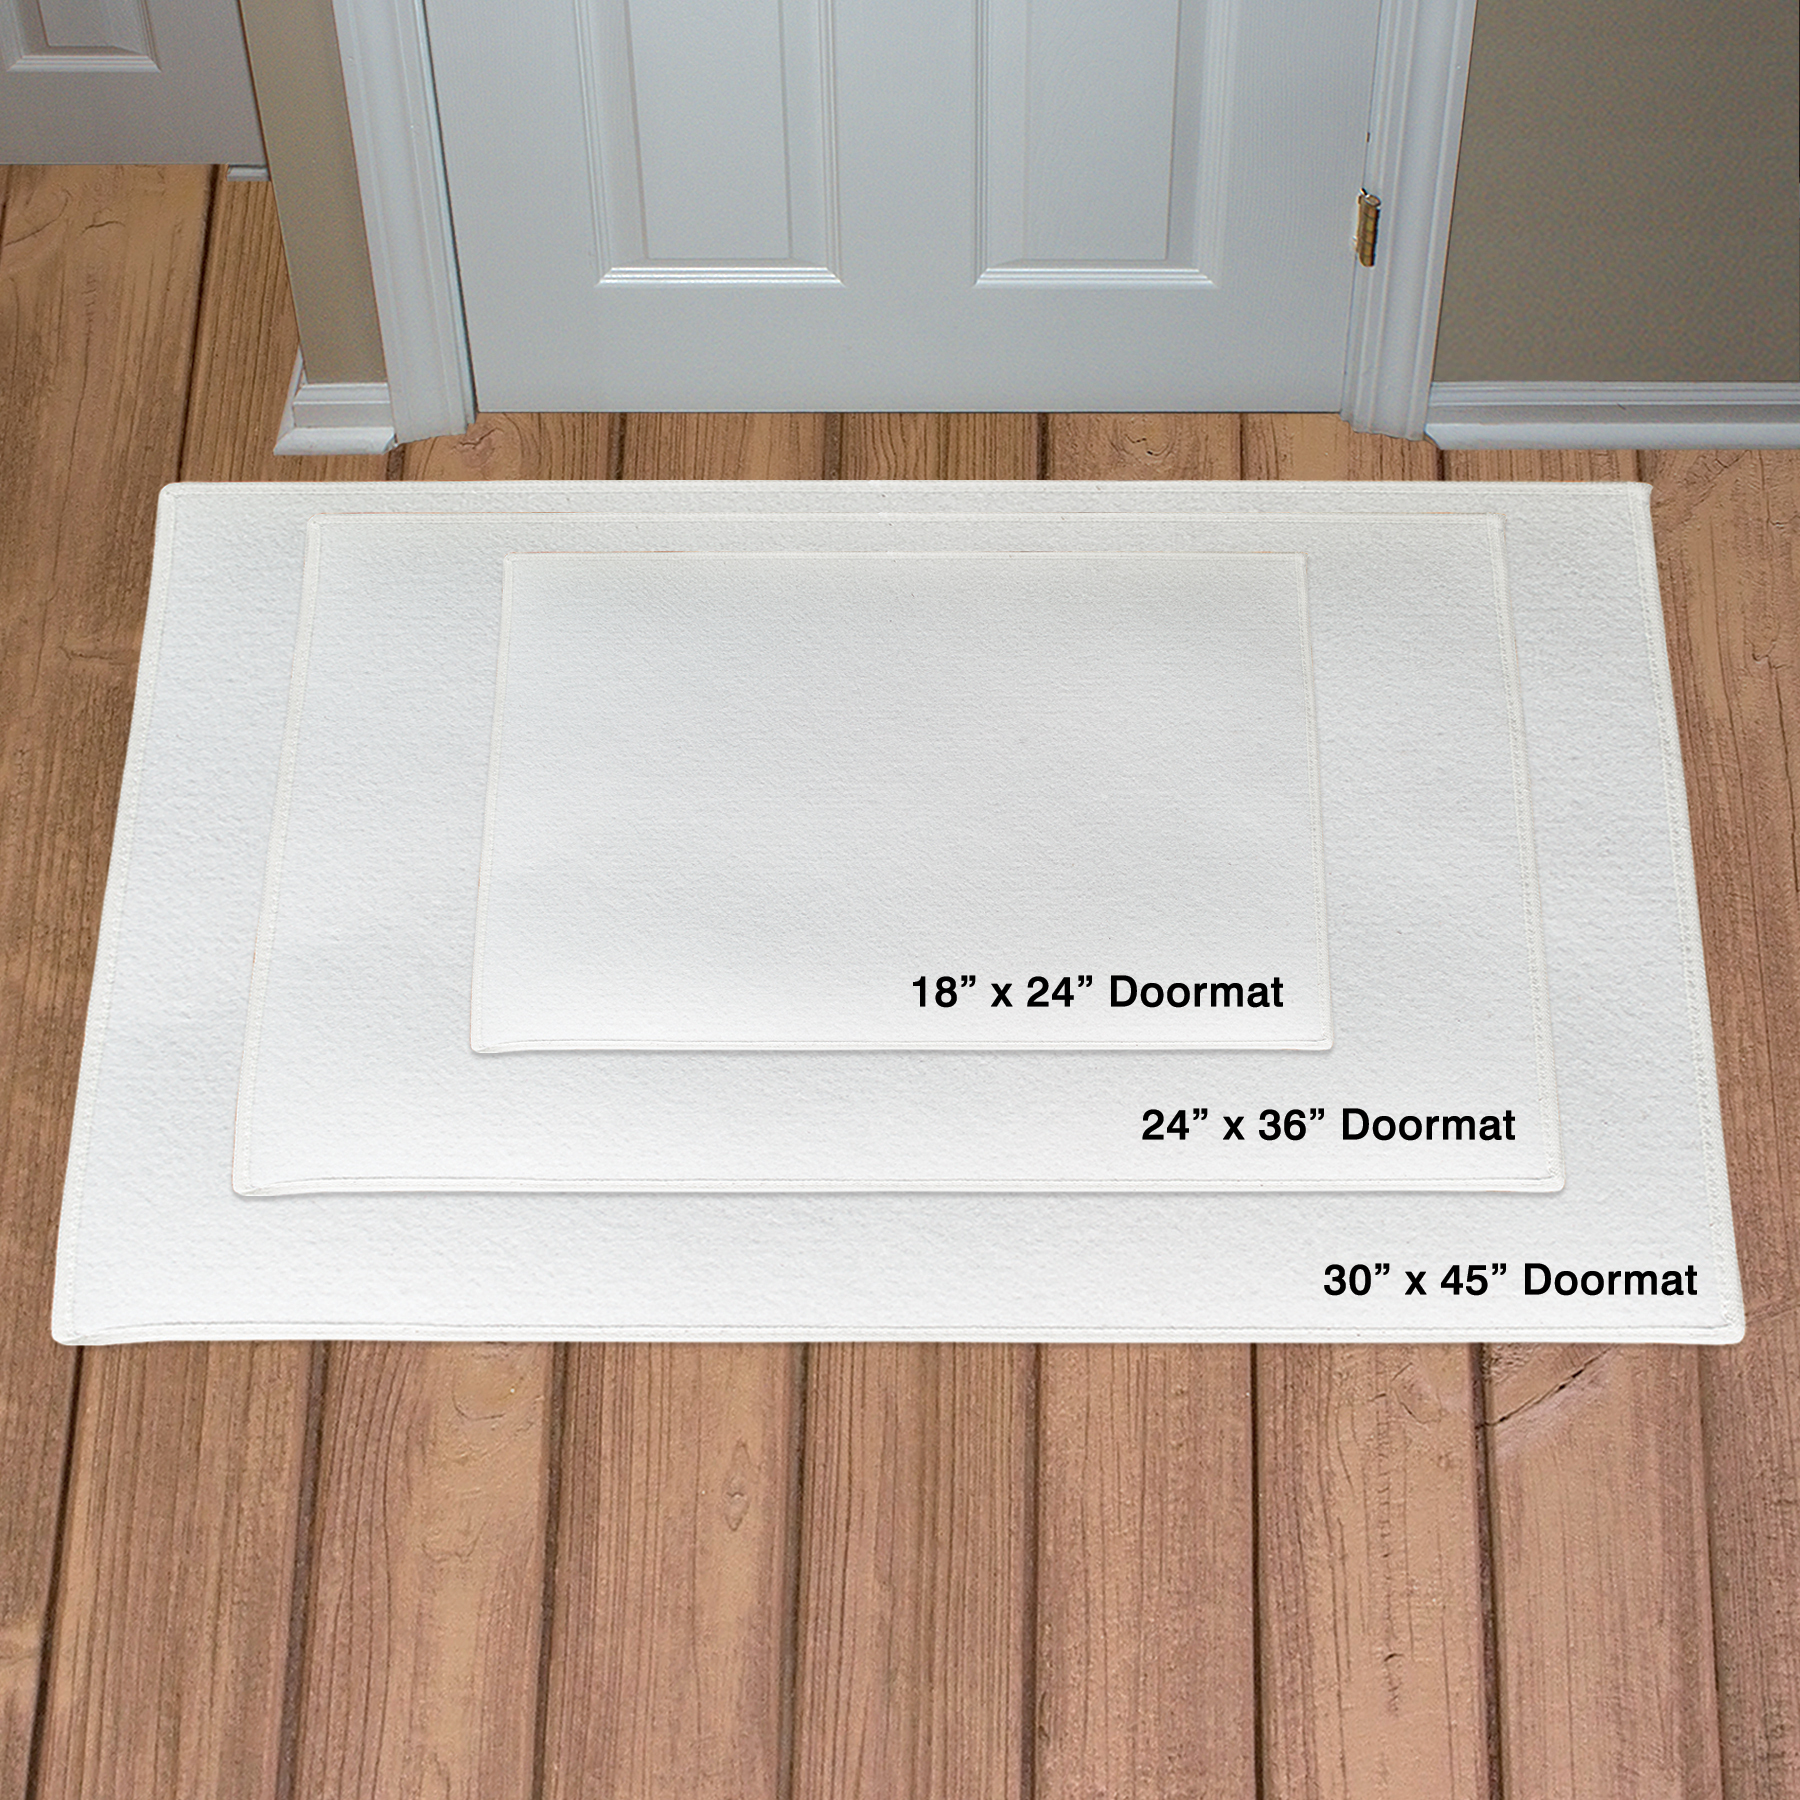 Home Coir Door Mat Home Sweet Home Doormat House Warming Gift, New Home  Heart Door Mat Indoor by Lpdoormats 